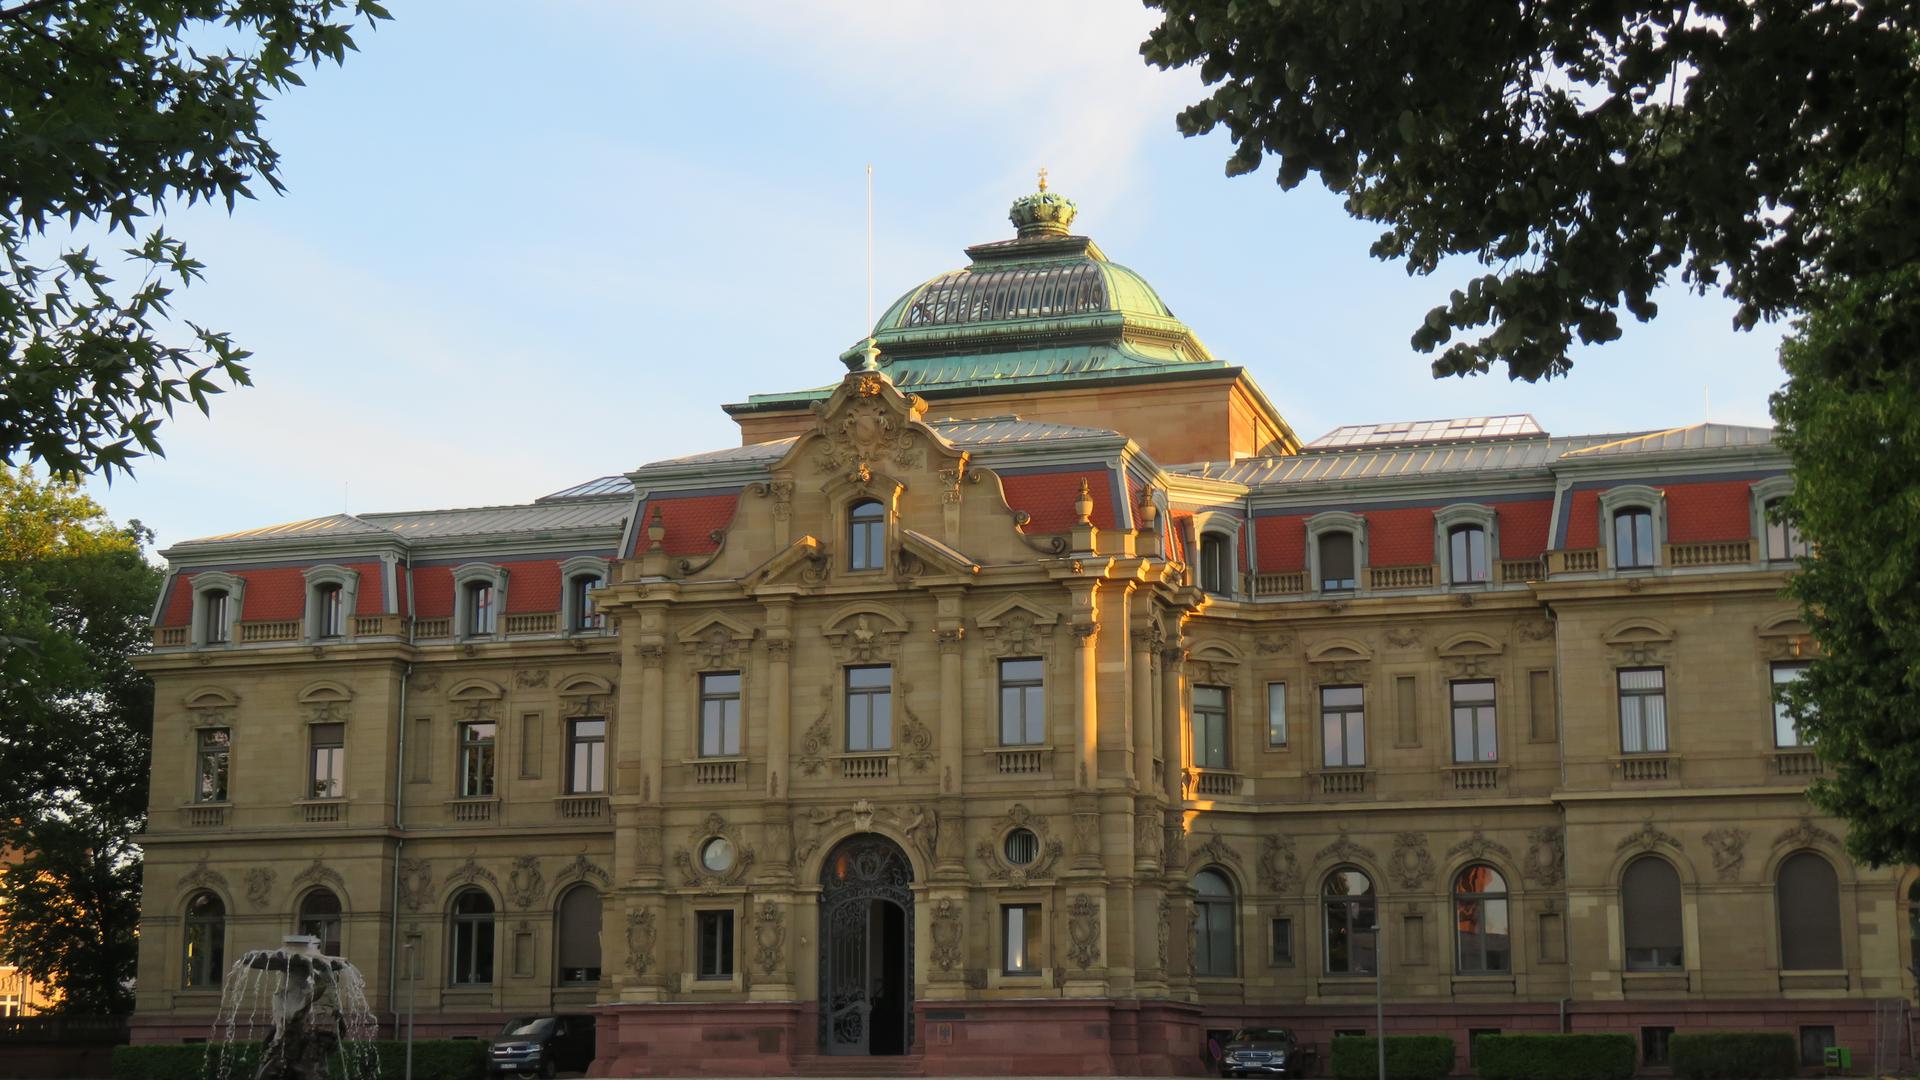 Erbgroßherzogliches Palais Karlsruhe - Sitz des BGH